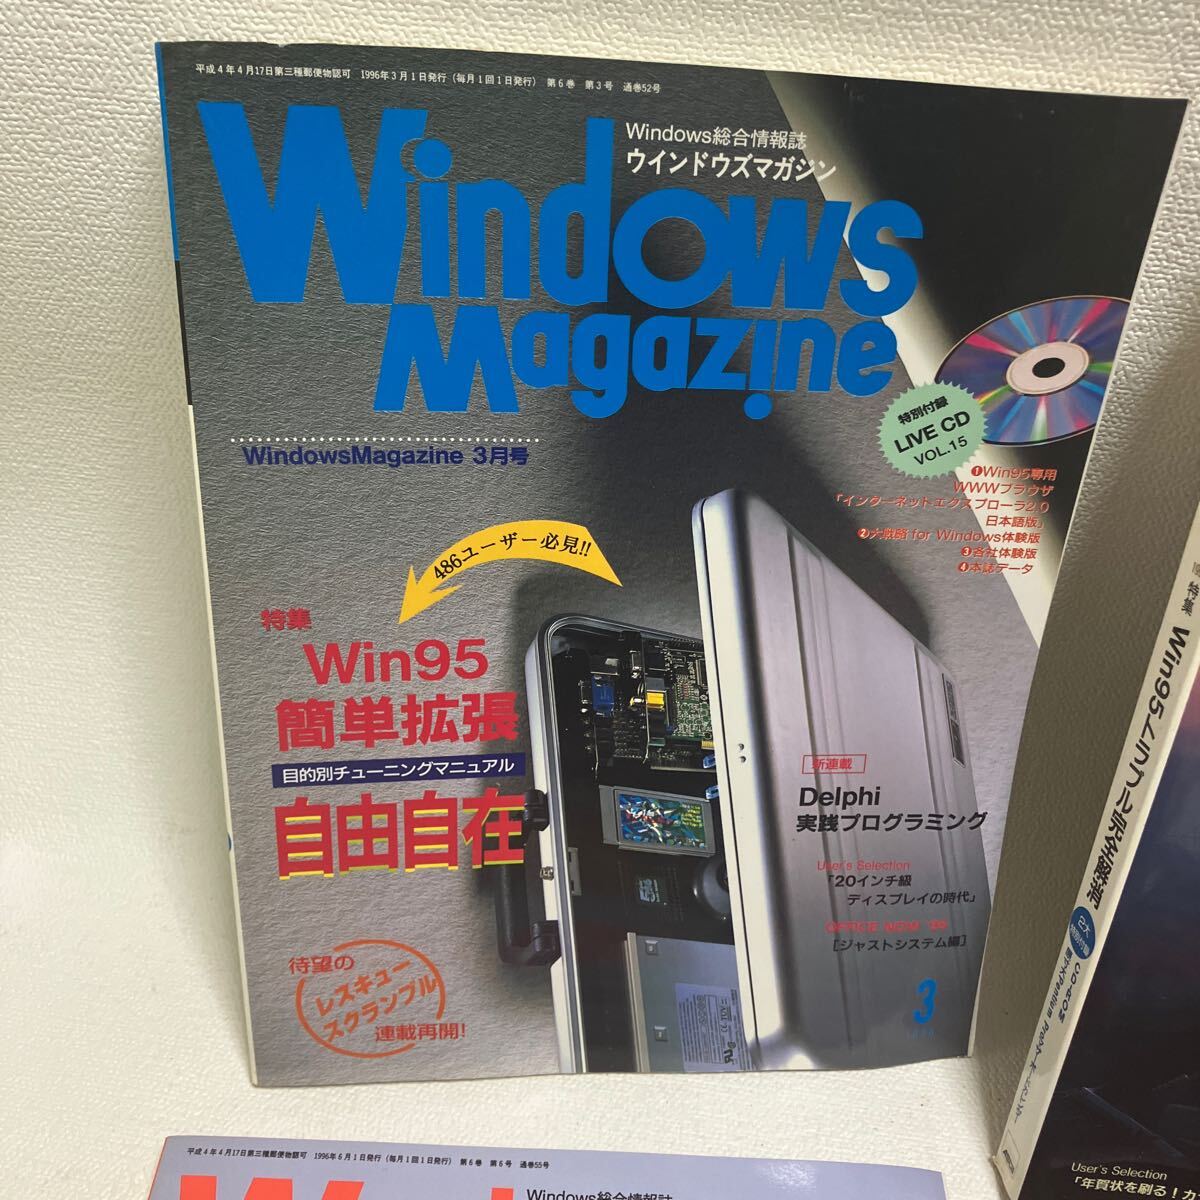 c352-10 80 雑誌 Windows Magazine ウィンドウズ 総合情報誌 パソコン誌 まとめて ネット マガジン 付録CD-ROM無し 1996年 汚れ痛み有り